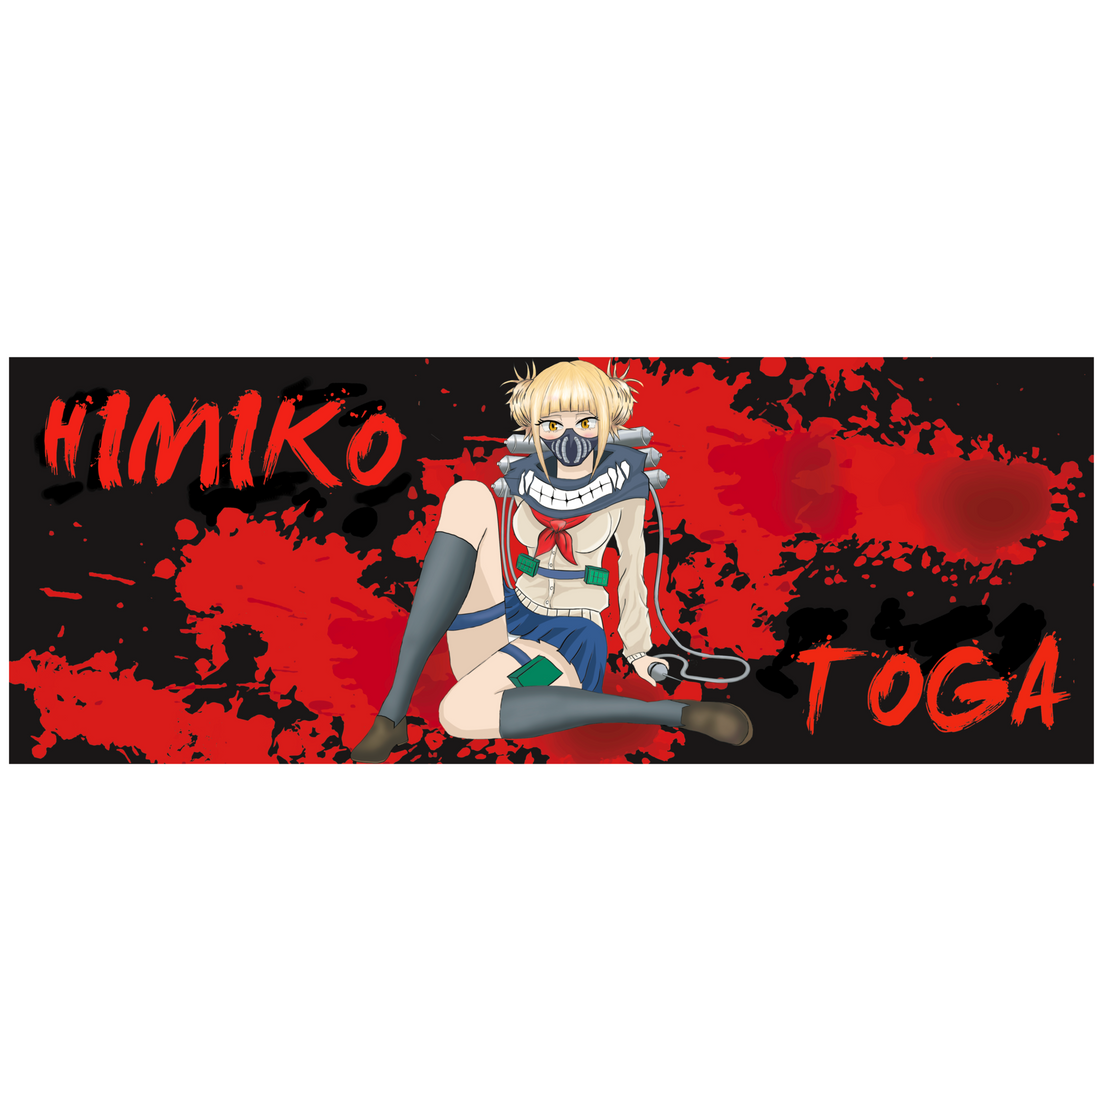 Himiko Toga